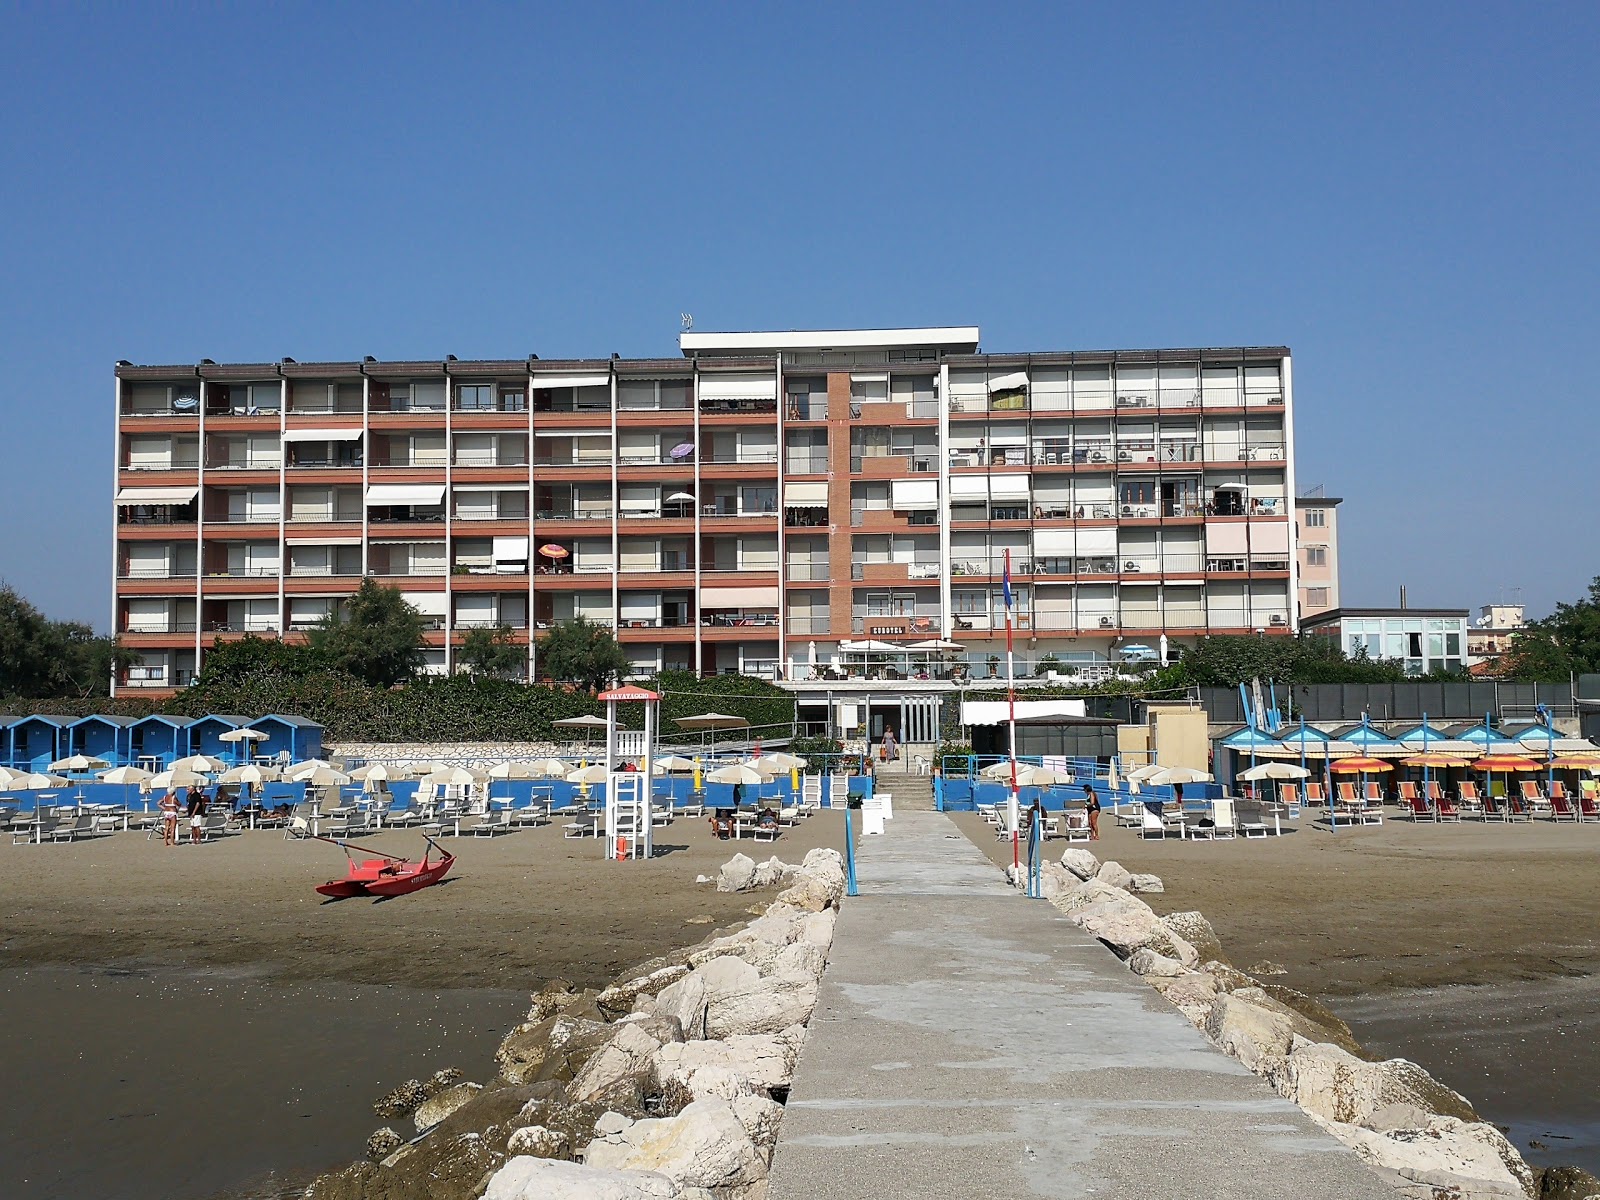 Foto de Murazzi Spiaggia Libera - recomendado para viajantes em família com crianças